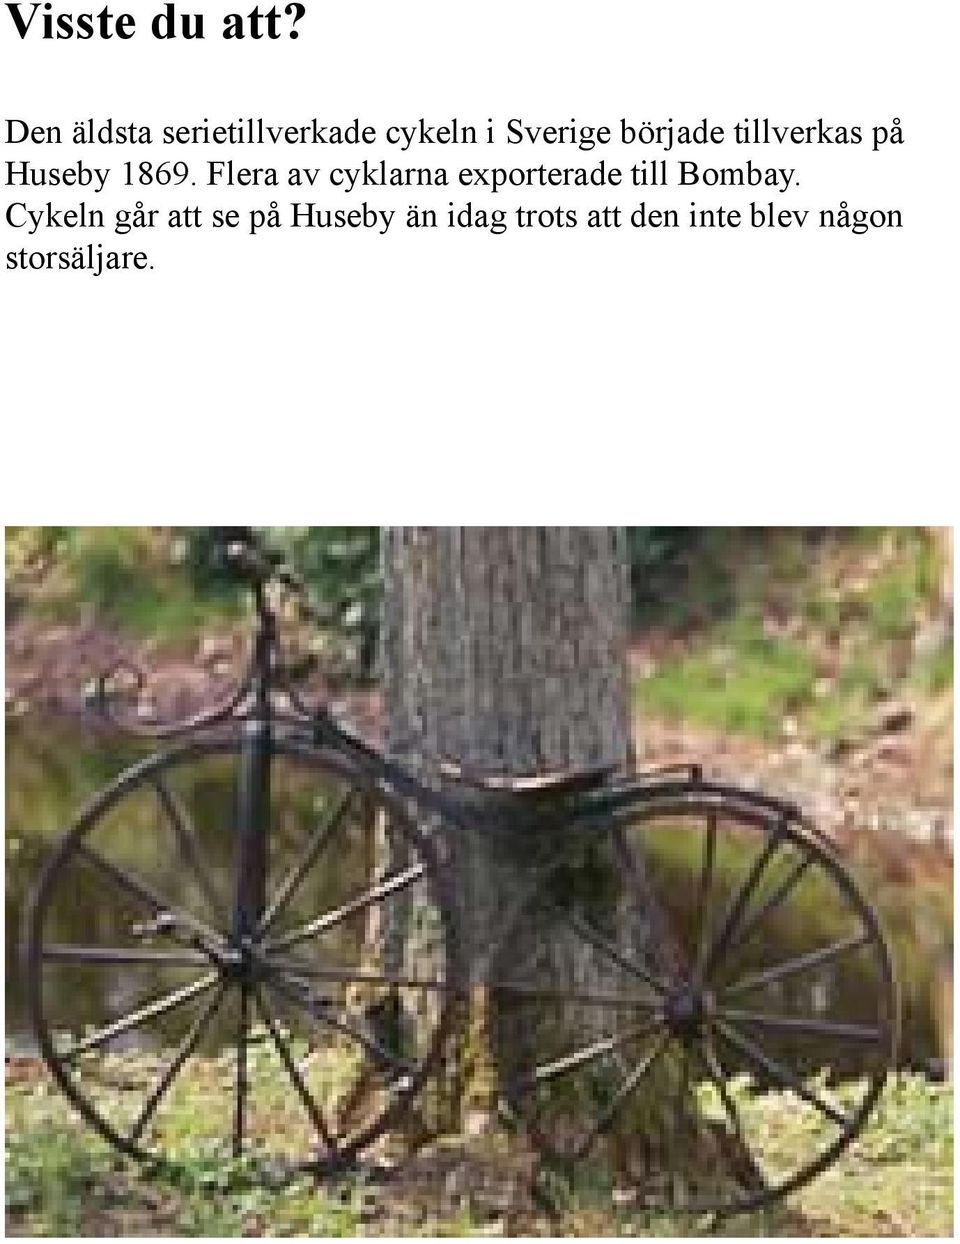 tillverkas på Huseby 1869.